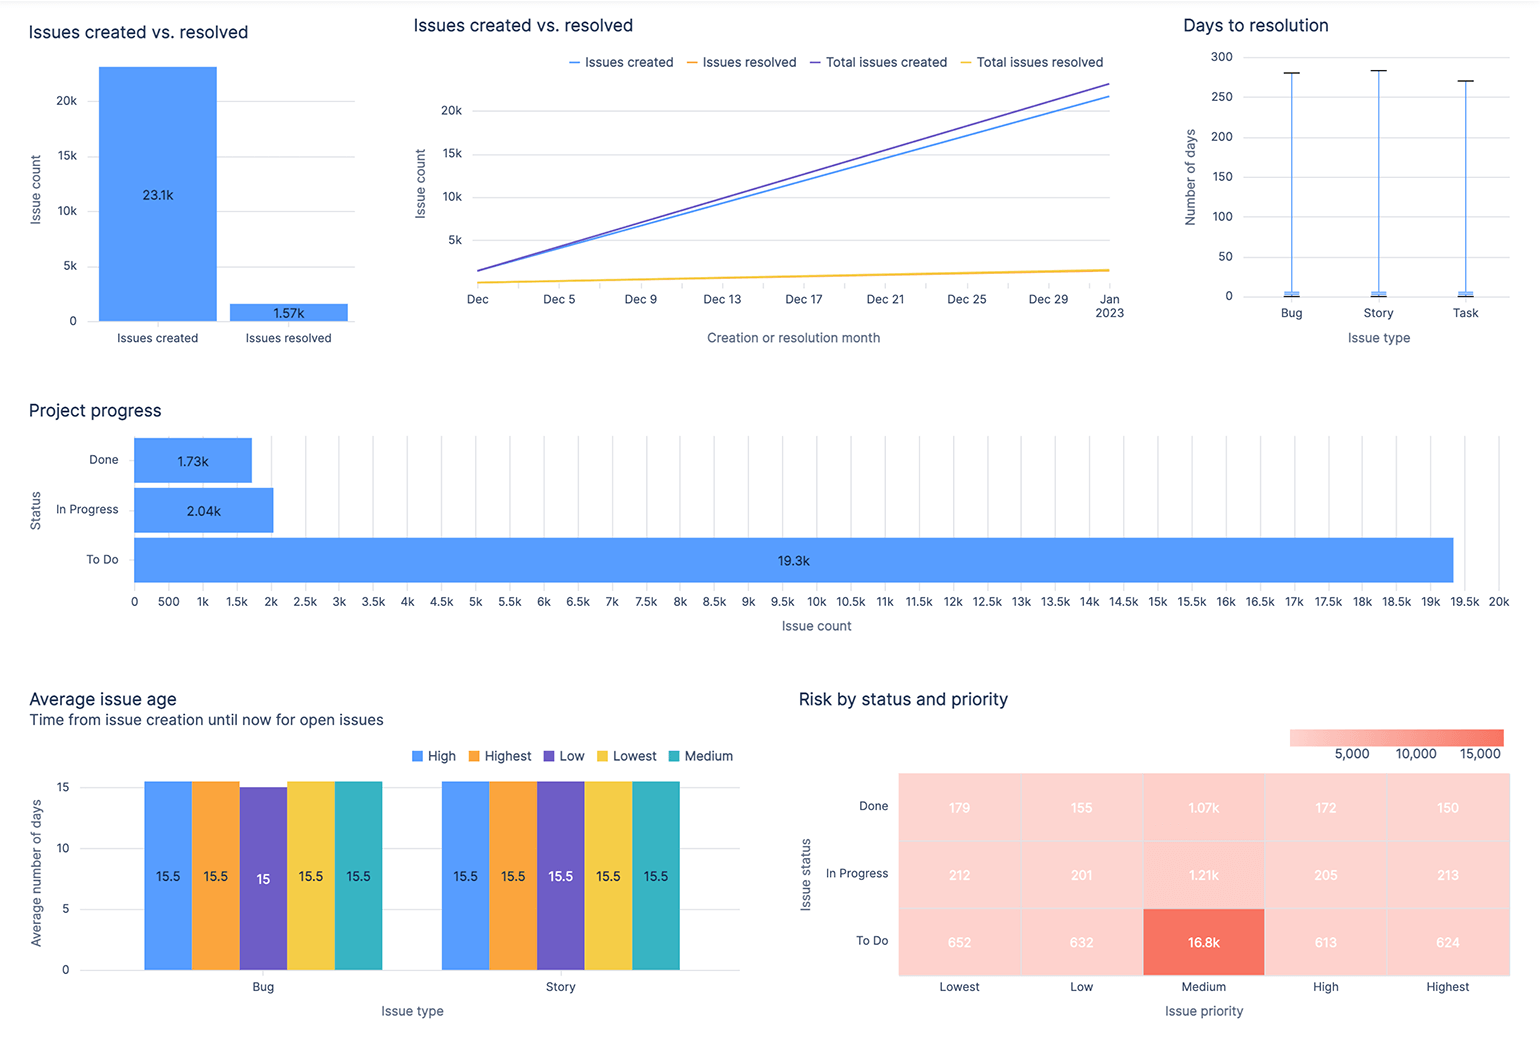 Atlassian Analytics 中的 Jira 项目概述仪表板显示了 DevOps 团队使用的图表，用于跟踪创建的事务和已解决的事务、项目进度、平均事务年限以及按状态和优先级划分的风险。